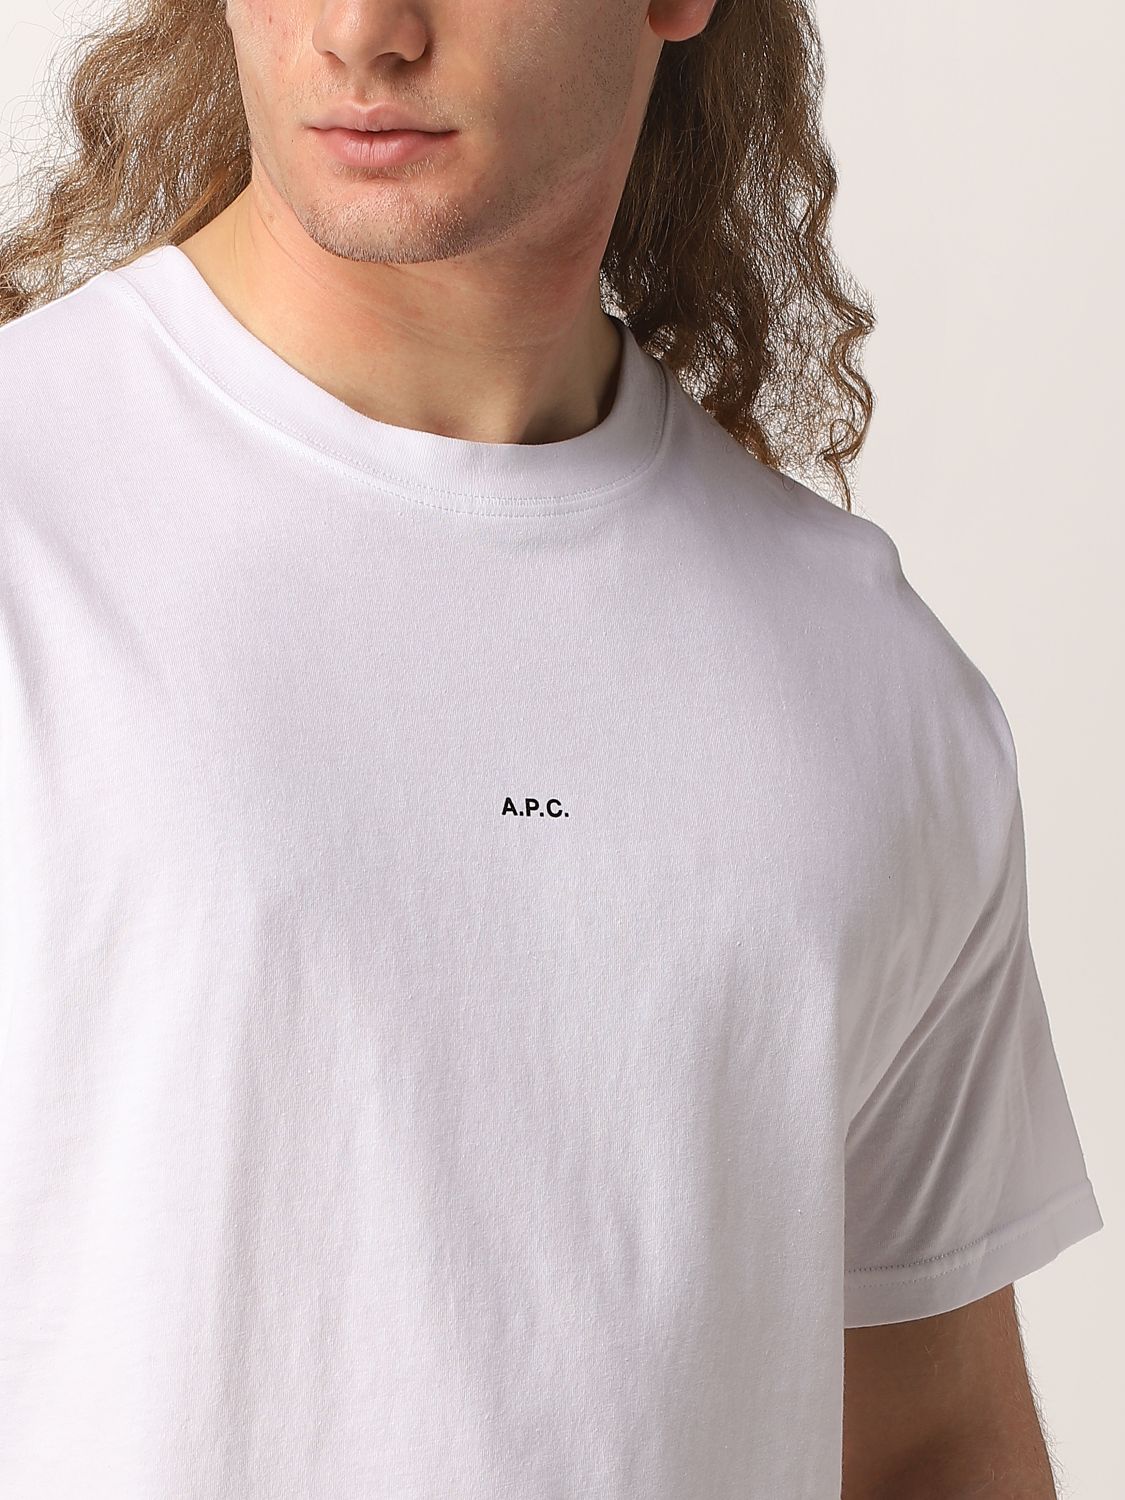 T-shirt A.p.c.: A.p.c. cotton jersey T-shirt with mini logo white 4